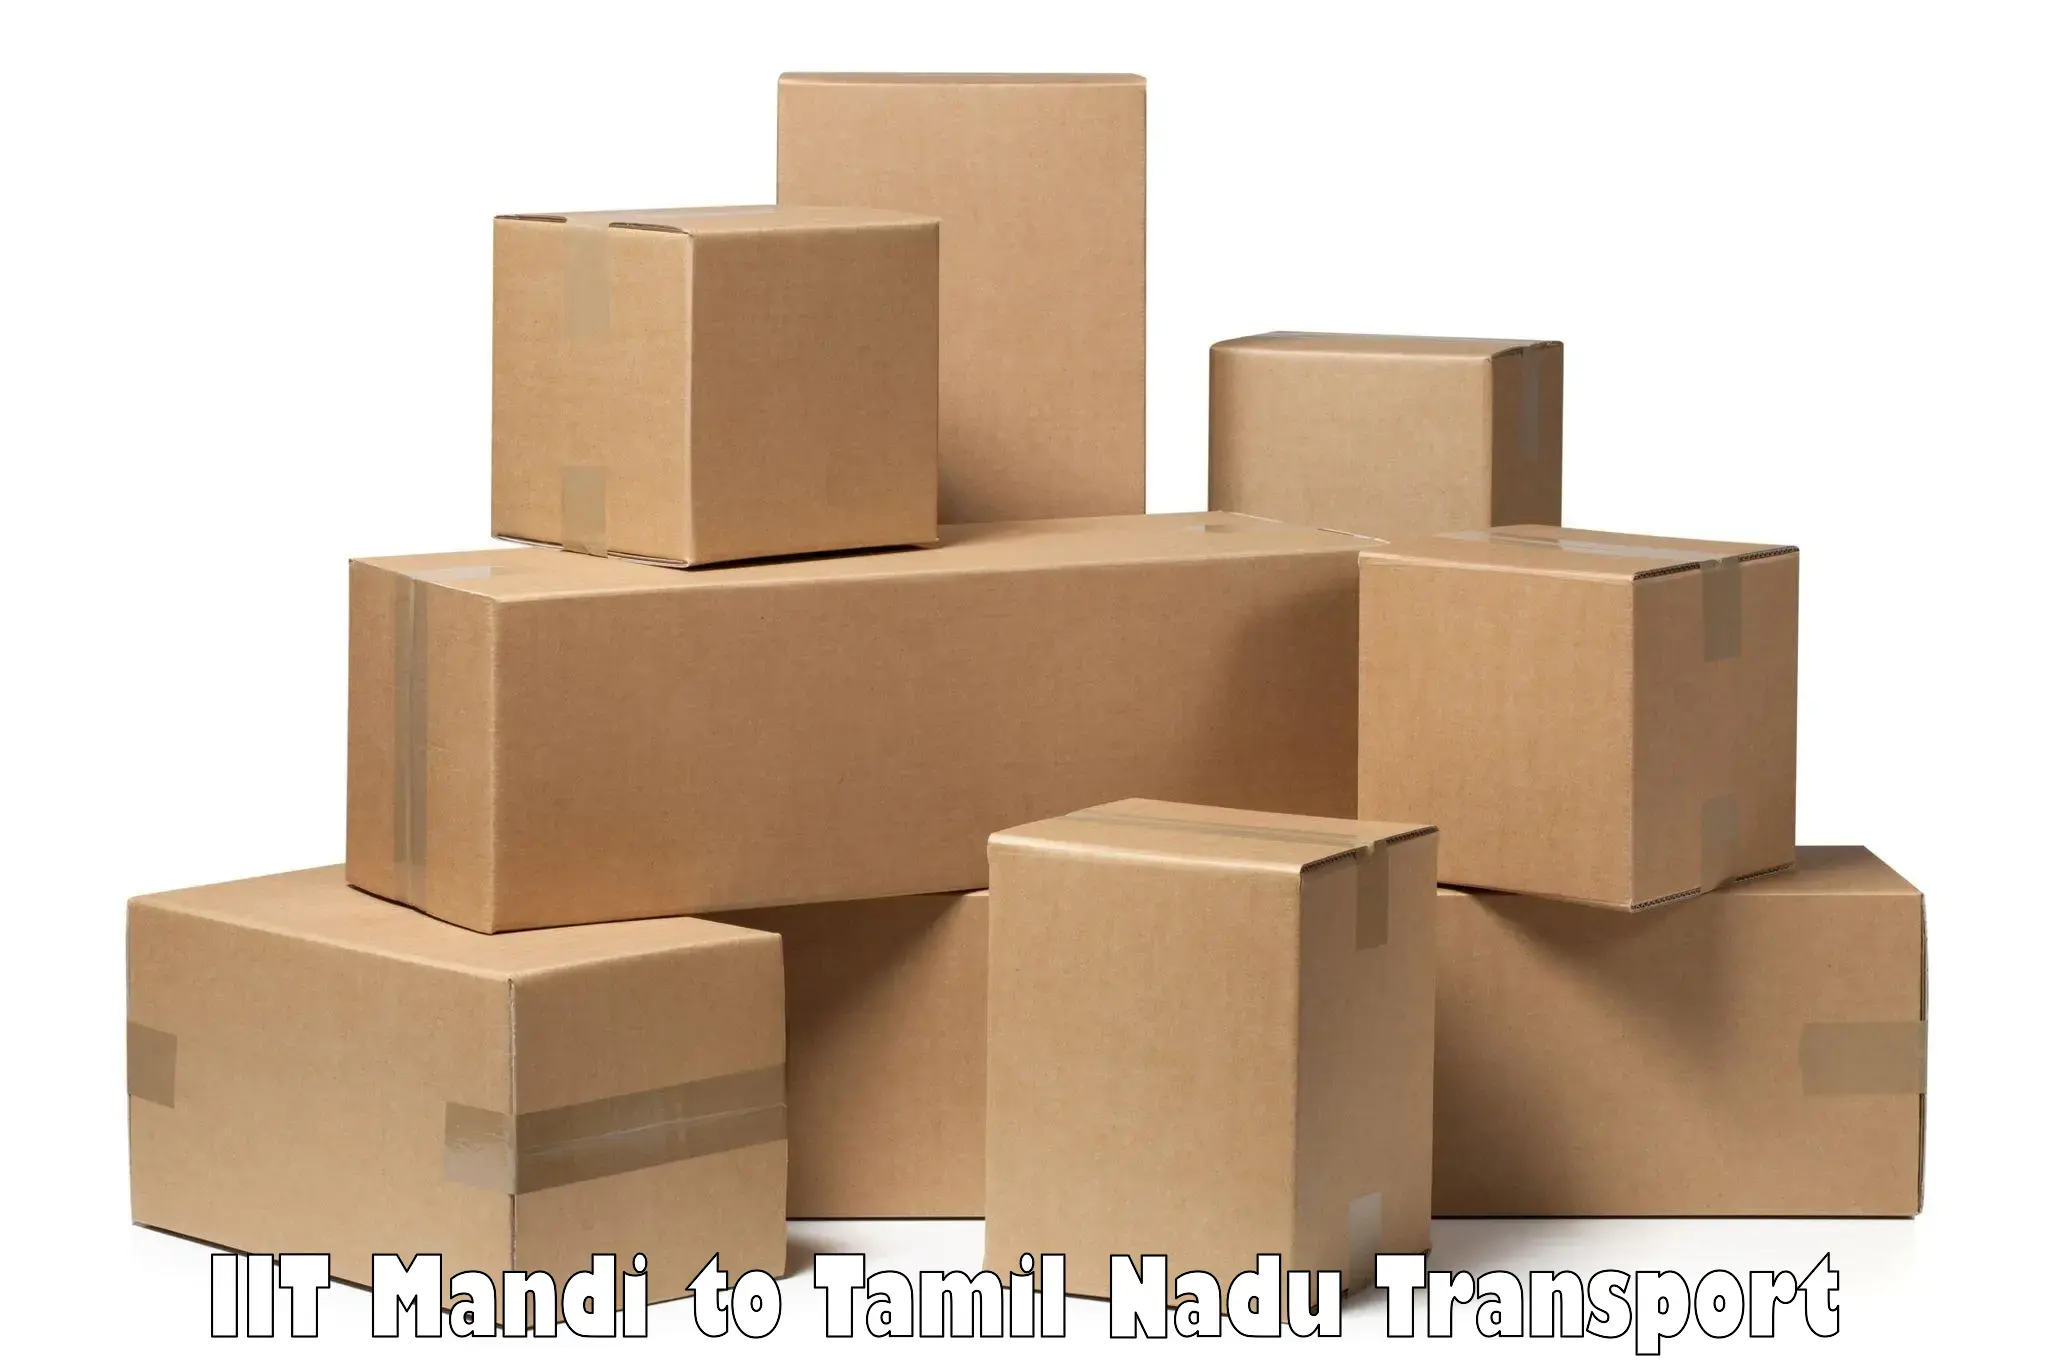 Transportation services IIT Mandi to Thirukkattupalli